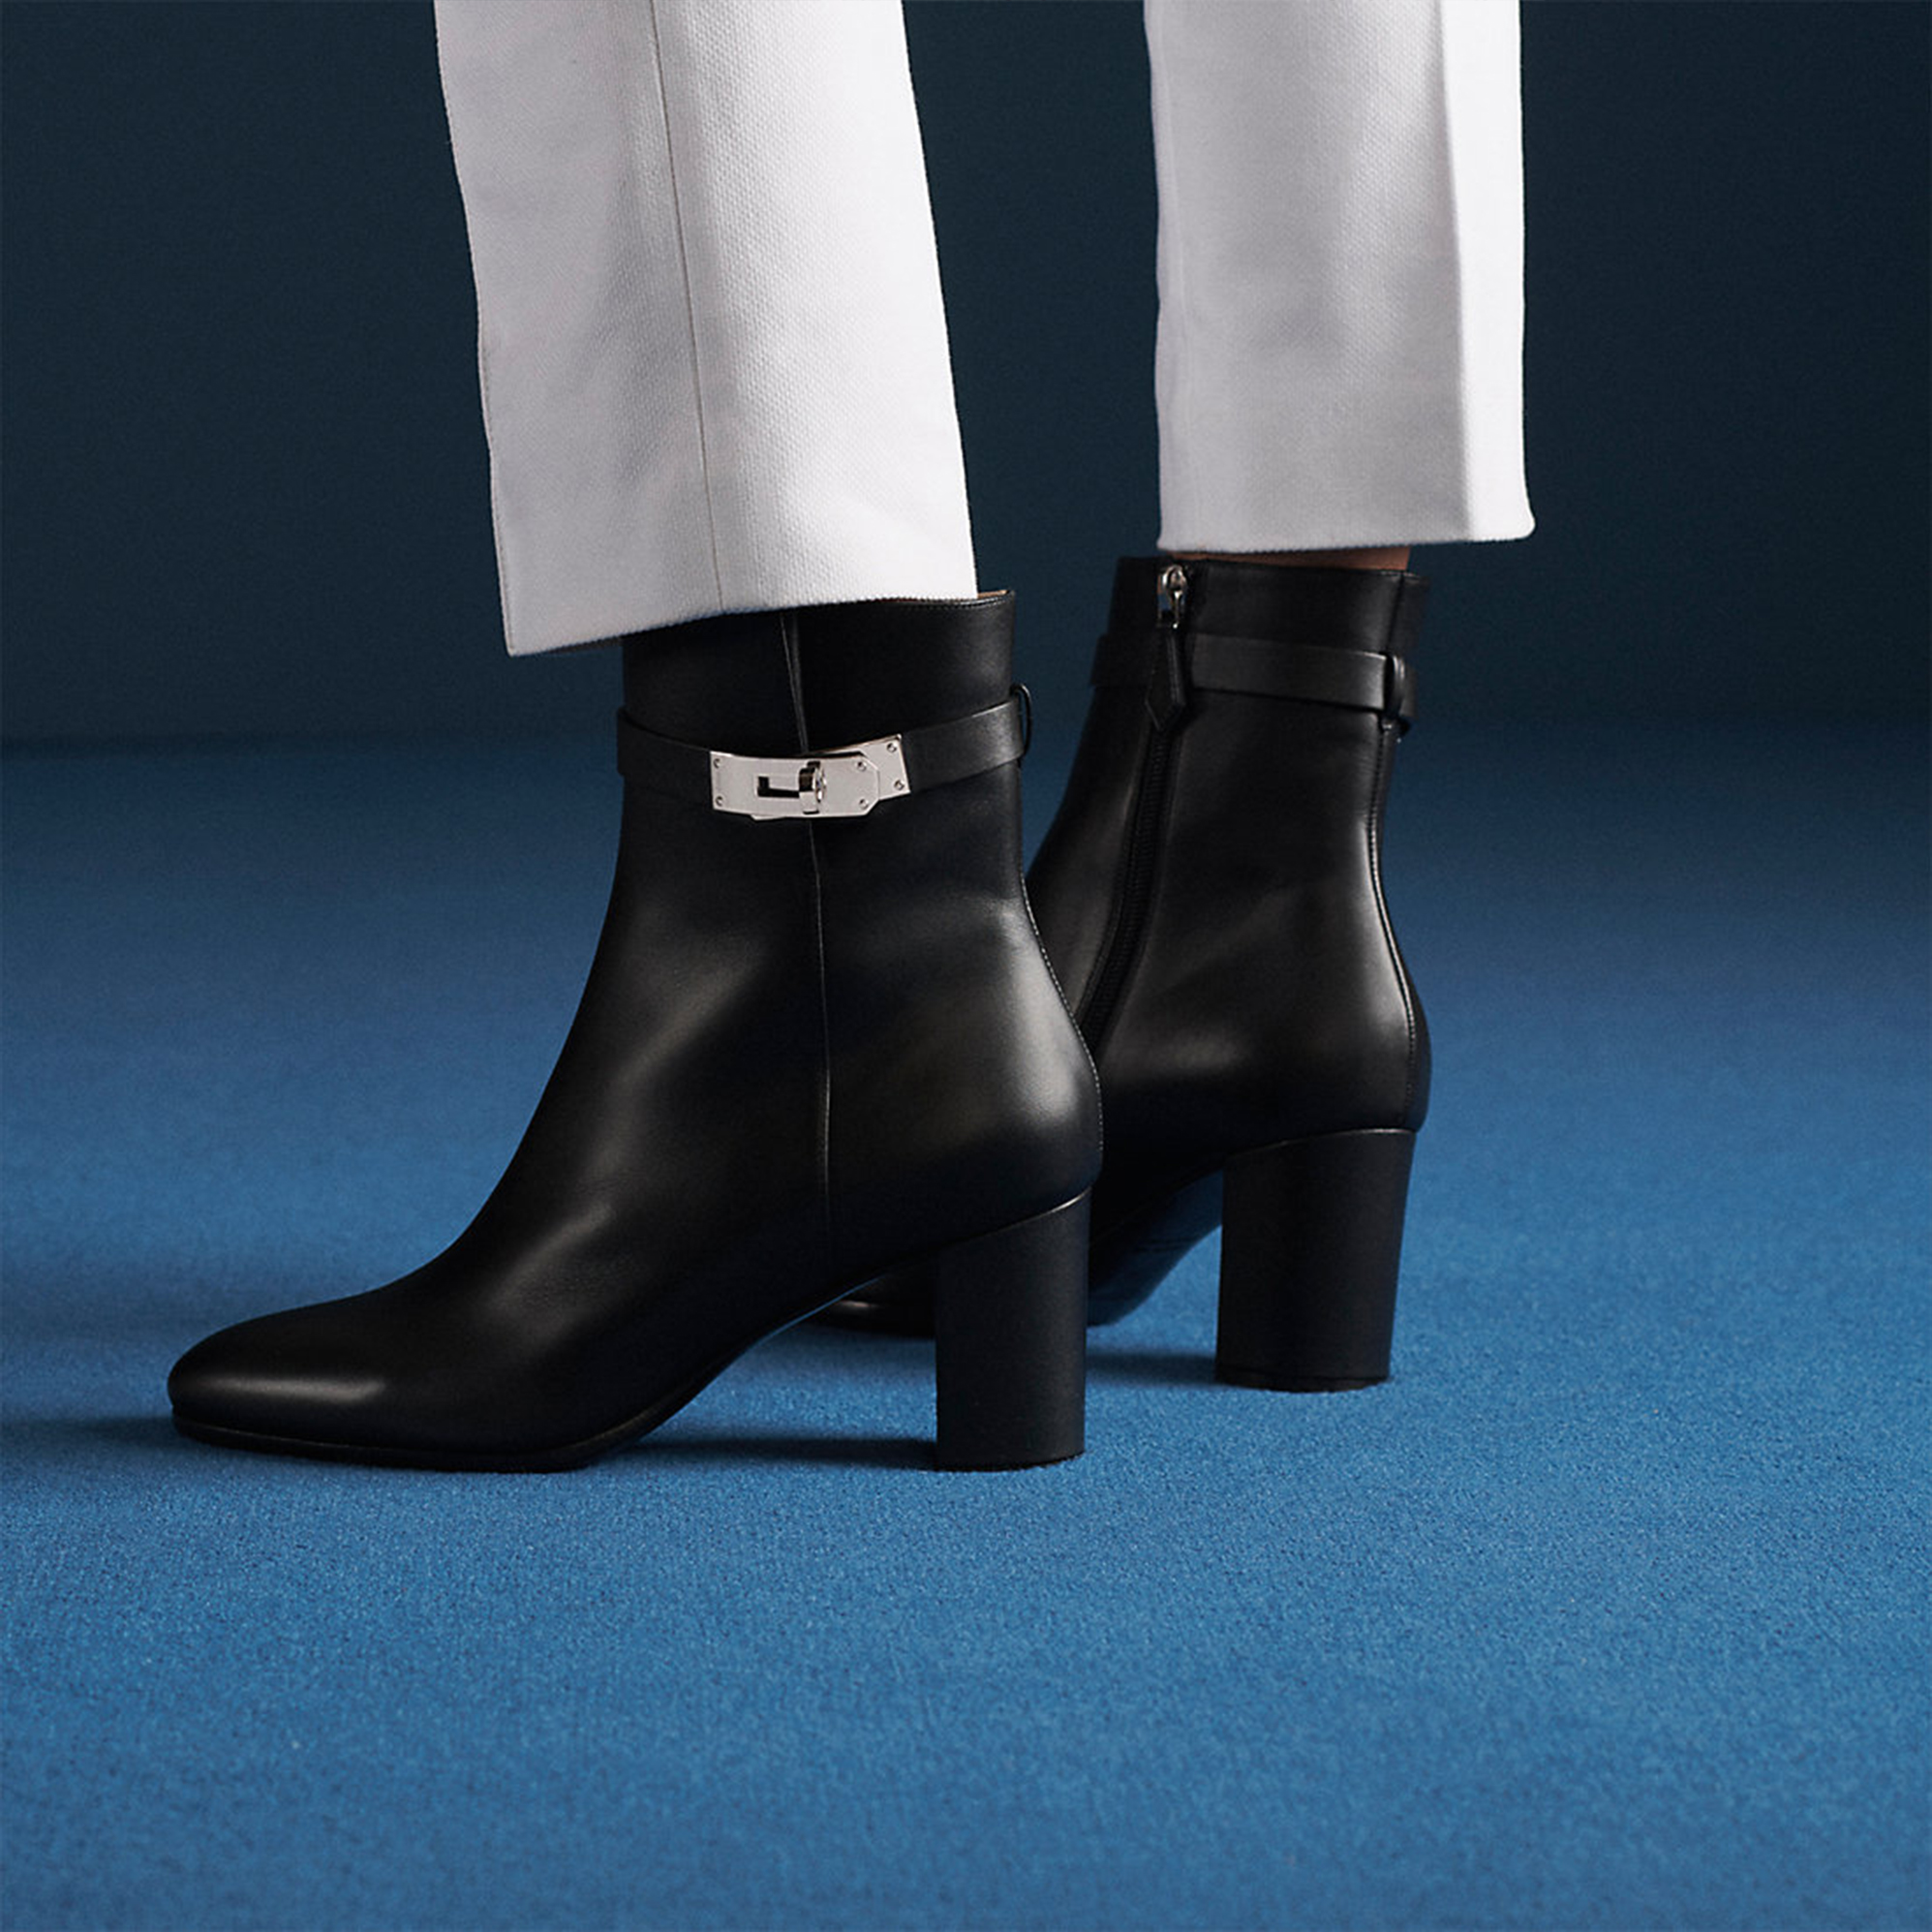 Hermès的奢華鞋履系列！Pierre Hardy將會如何演繹品牌的經典元素？